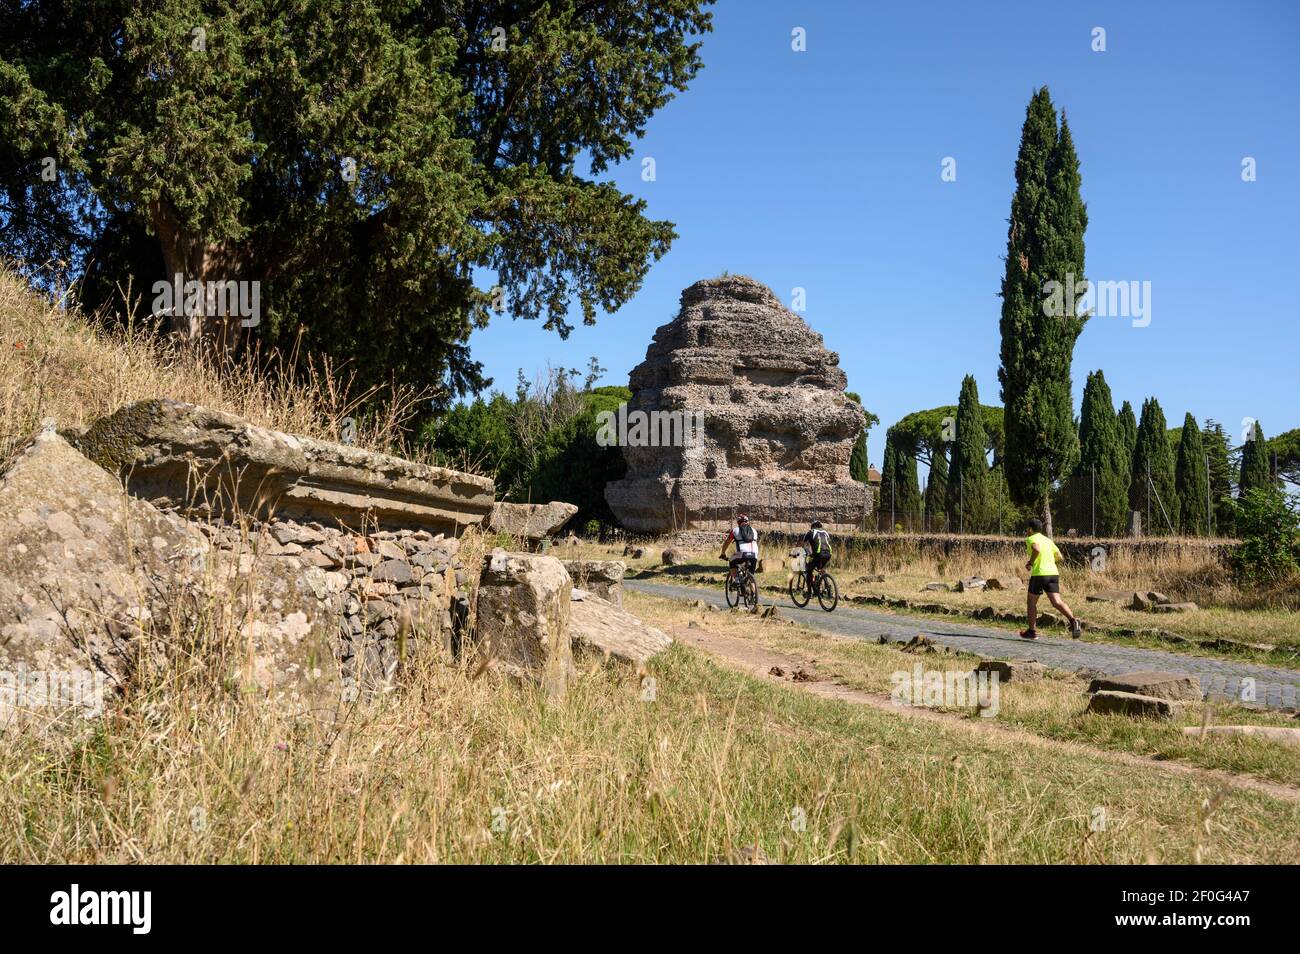 Rome. Italie. Via Appia Antica (voie Appienne), les personnes marchant et faisant du vélo parmi les monuments funéraires romains. Le mausolée de la pyramide Banque D'Images